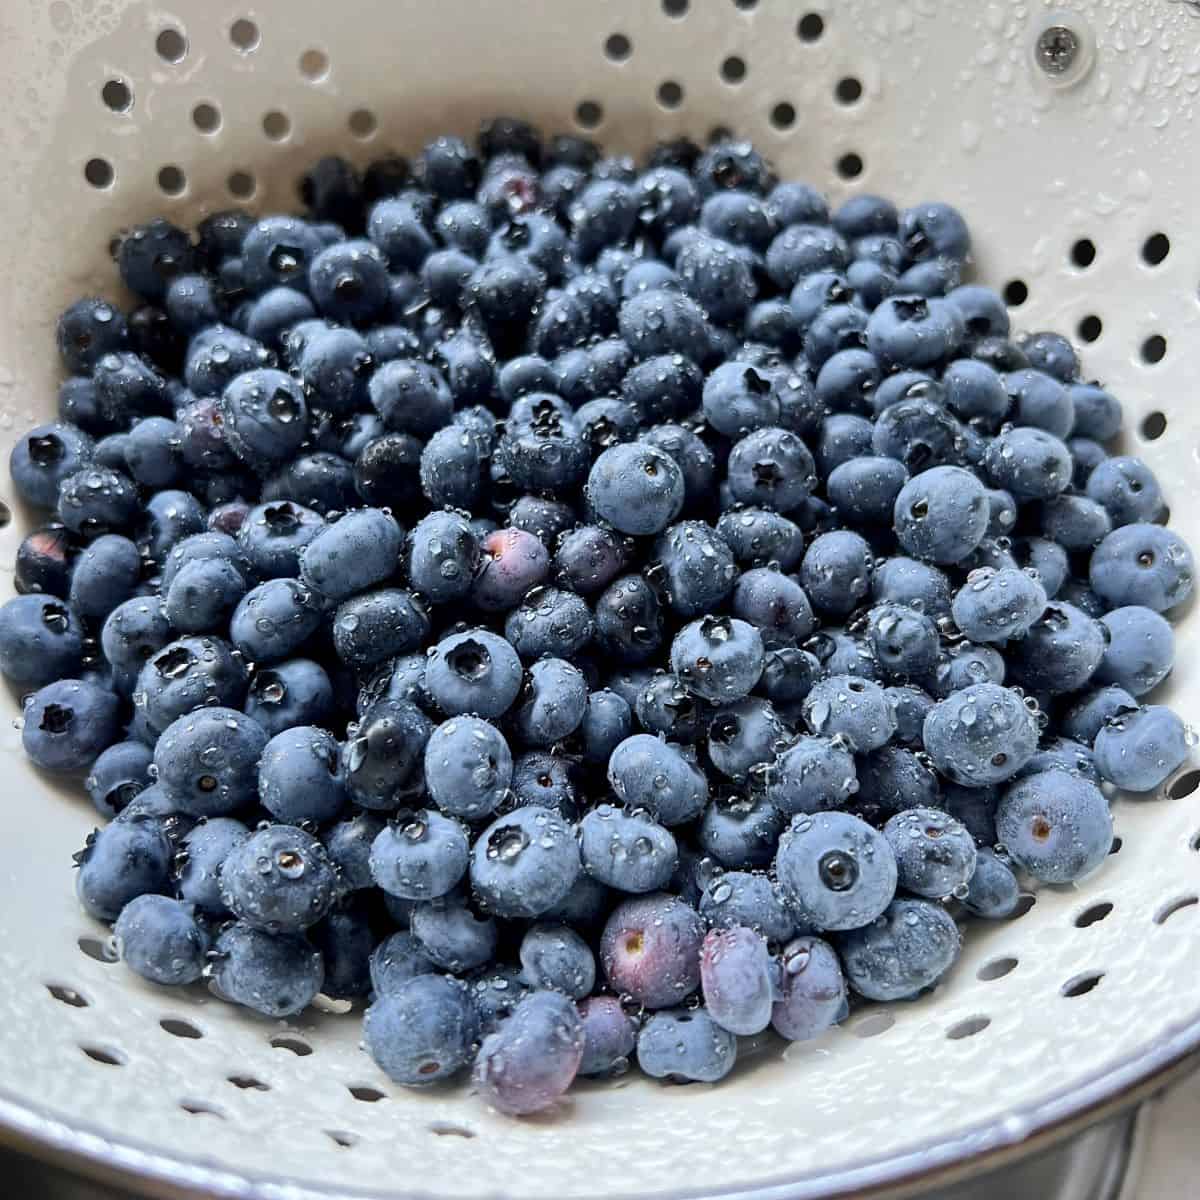 Fresh blueberries in a white colander.